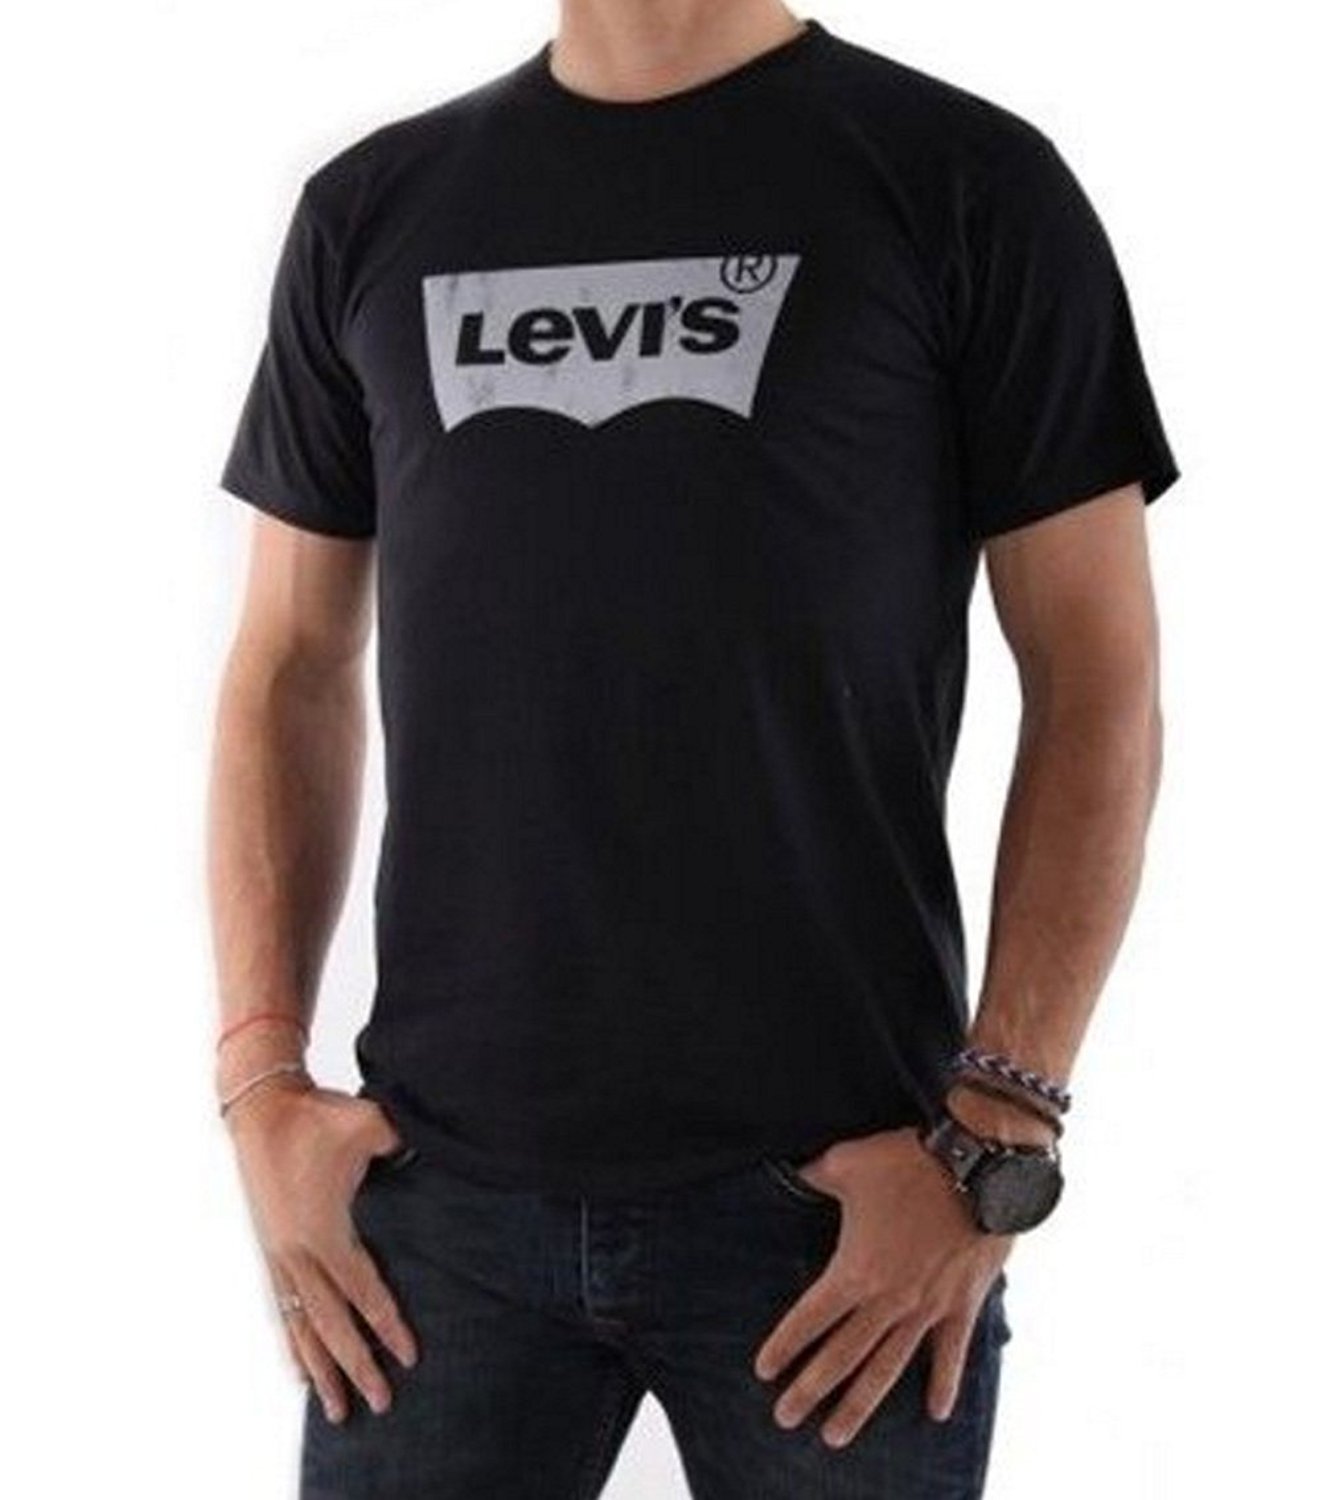 Купить футболку levis. Левайс майка черная мужская. Футболка Levis мужская лого. Футболка левайс черная мужская. Levis женская черная футболка Levis.